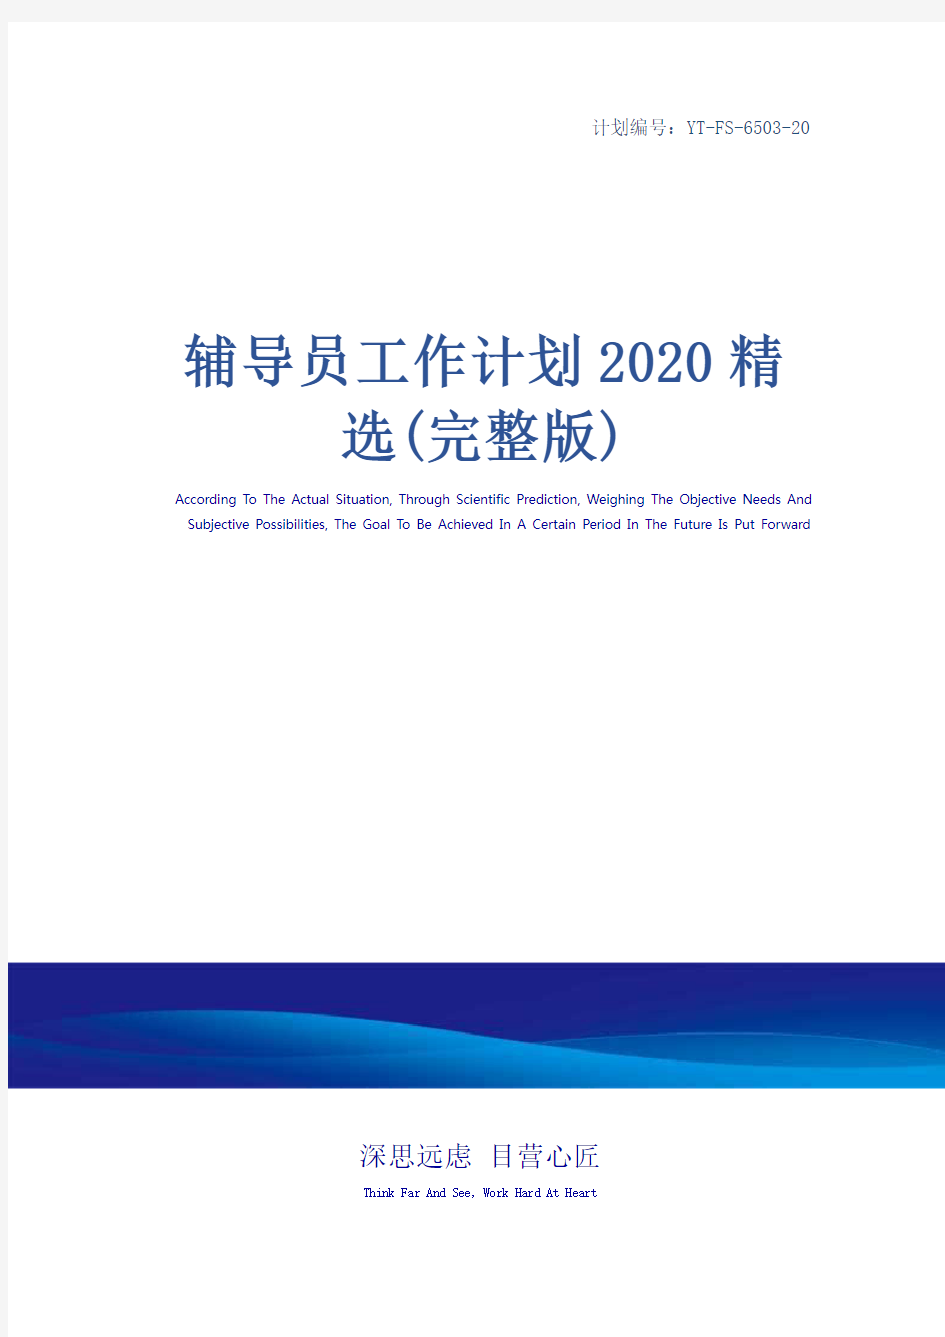 辅导员工作计划2020精选(完整版)